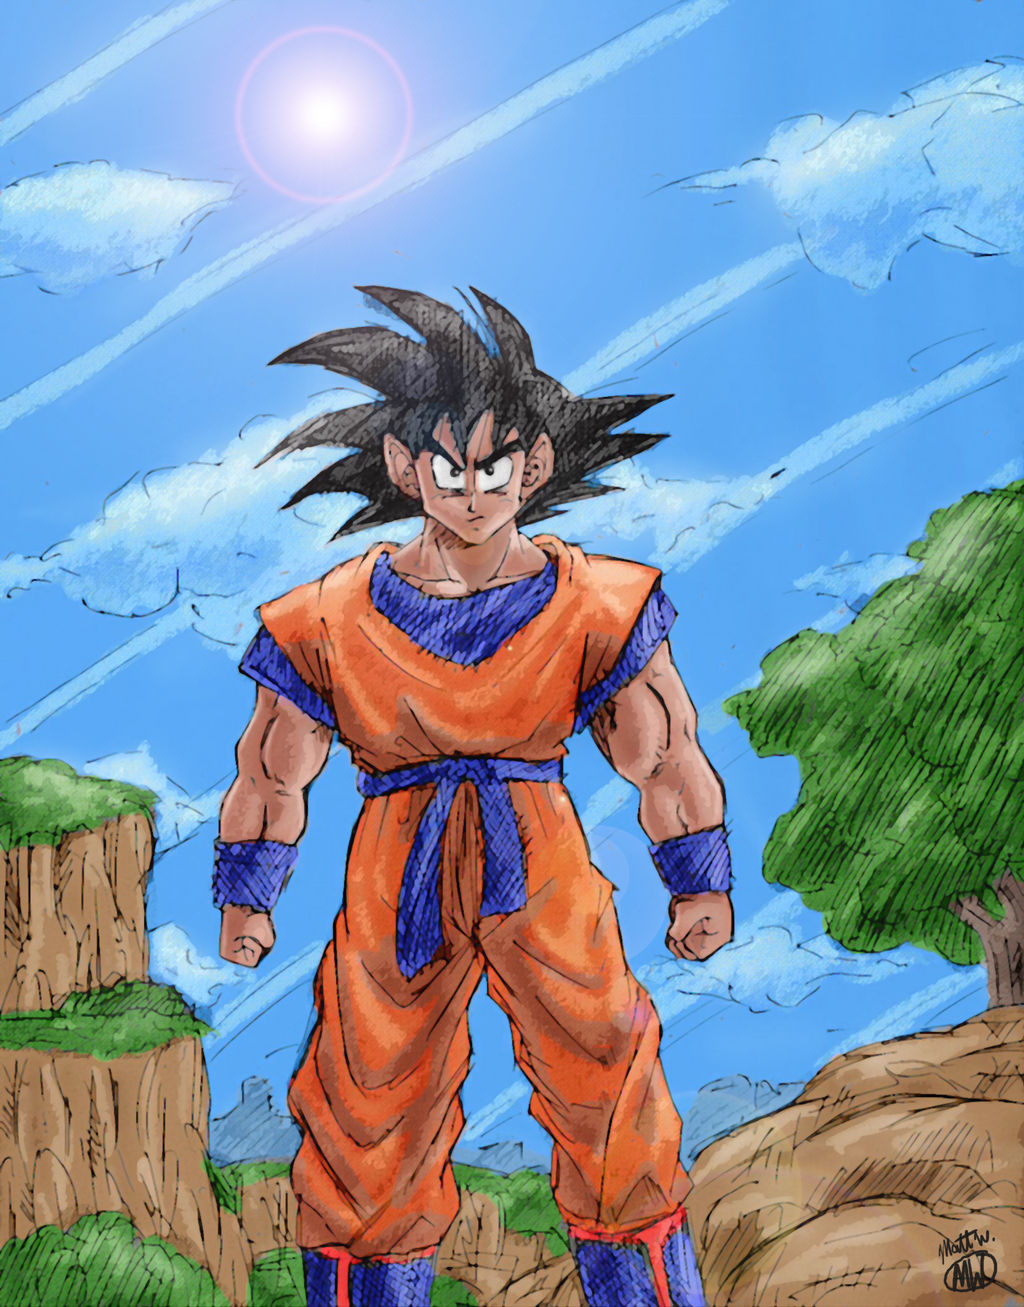 Mw Dbz Goku standing ready by dudewhodrawsstuff on DeviantArt